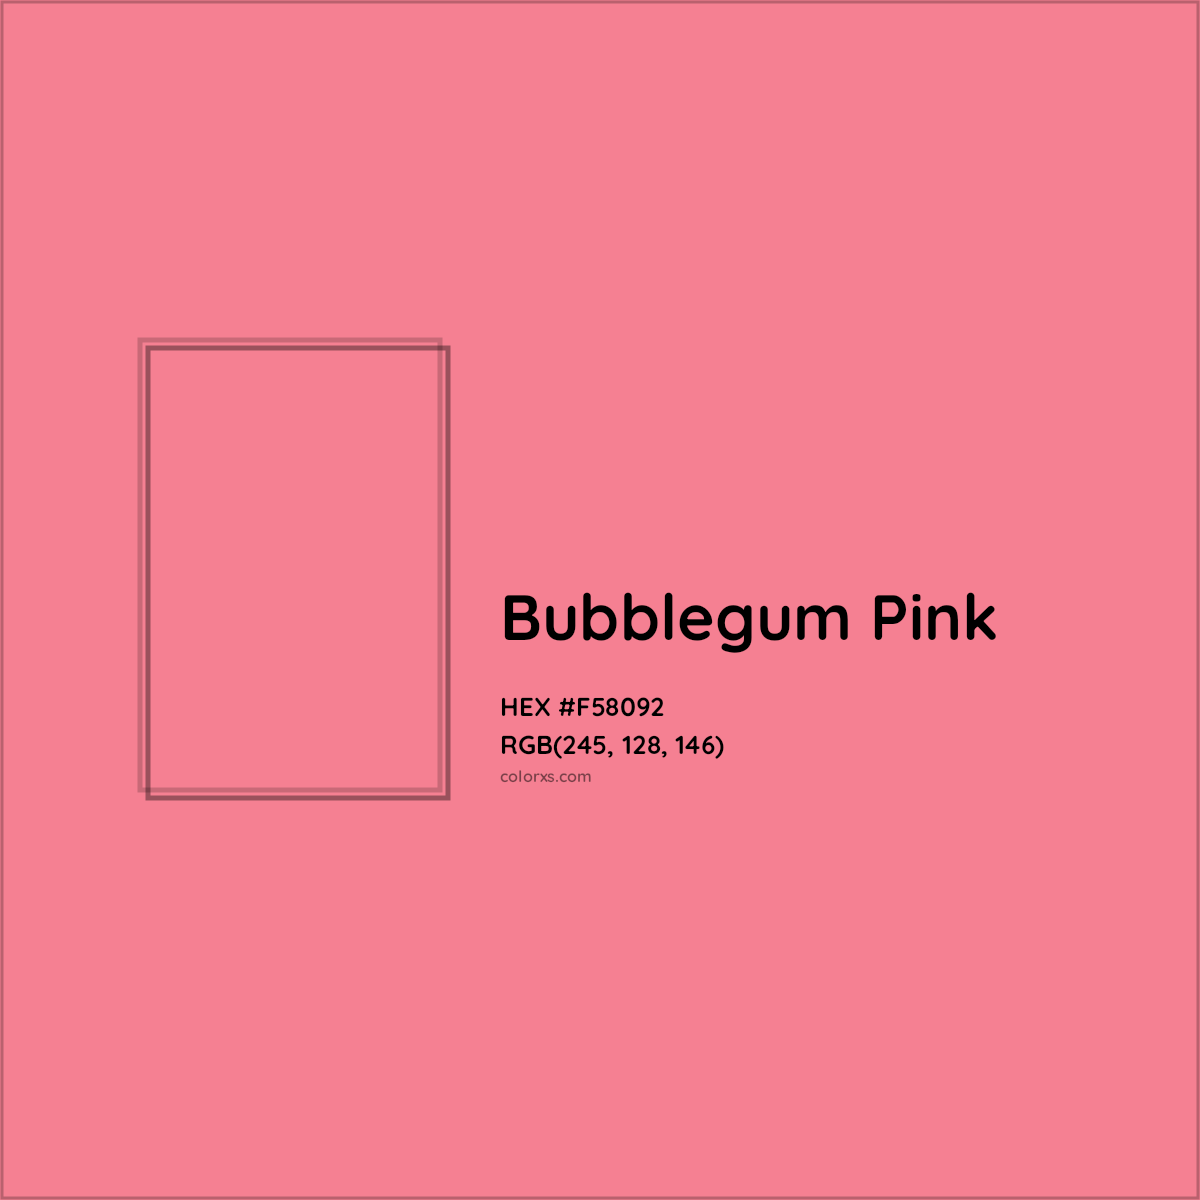 "Purple Paradise"
4. "Bubblegum Pink" - wide 2